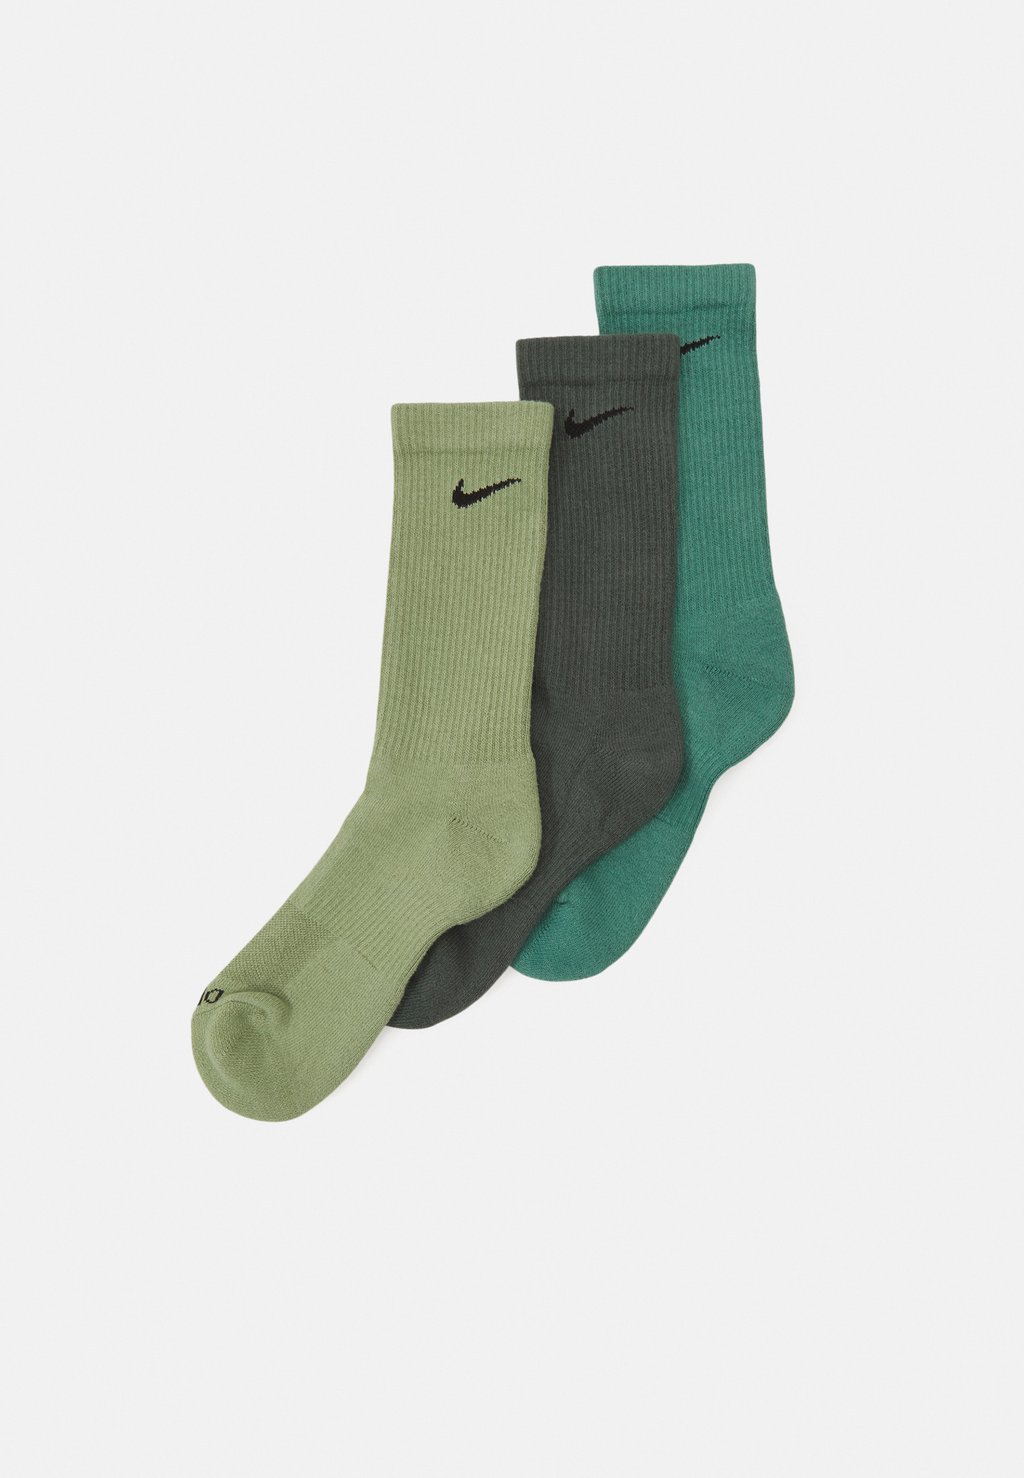 Спортивные носки Everyday Plus Cush Crew Unisex 3 Pack Nike, цвет vintage green/black/oil green cyberpunk black green